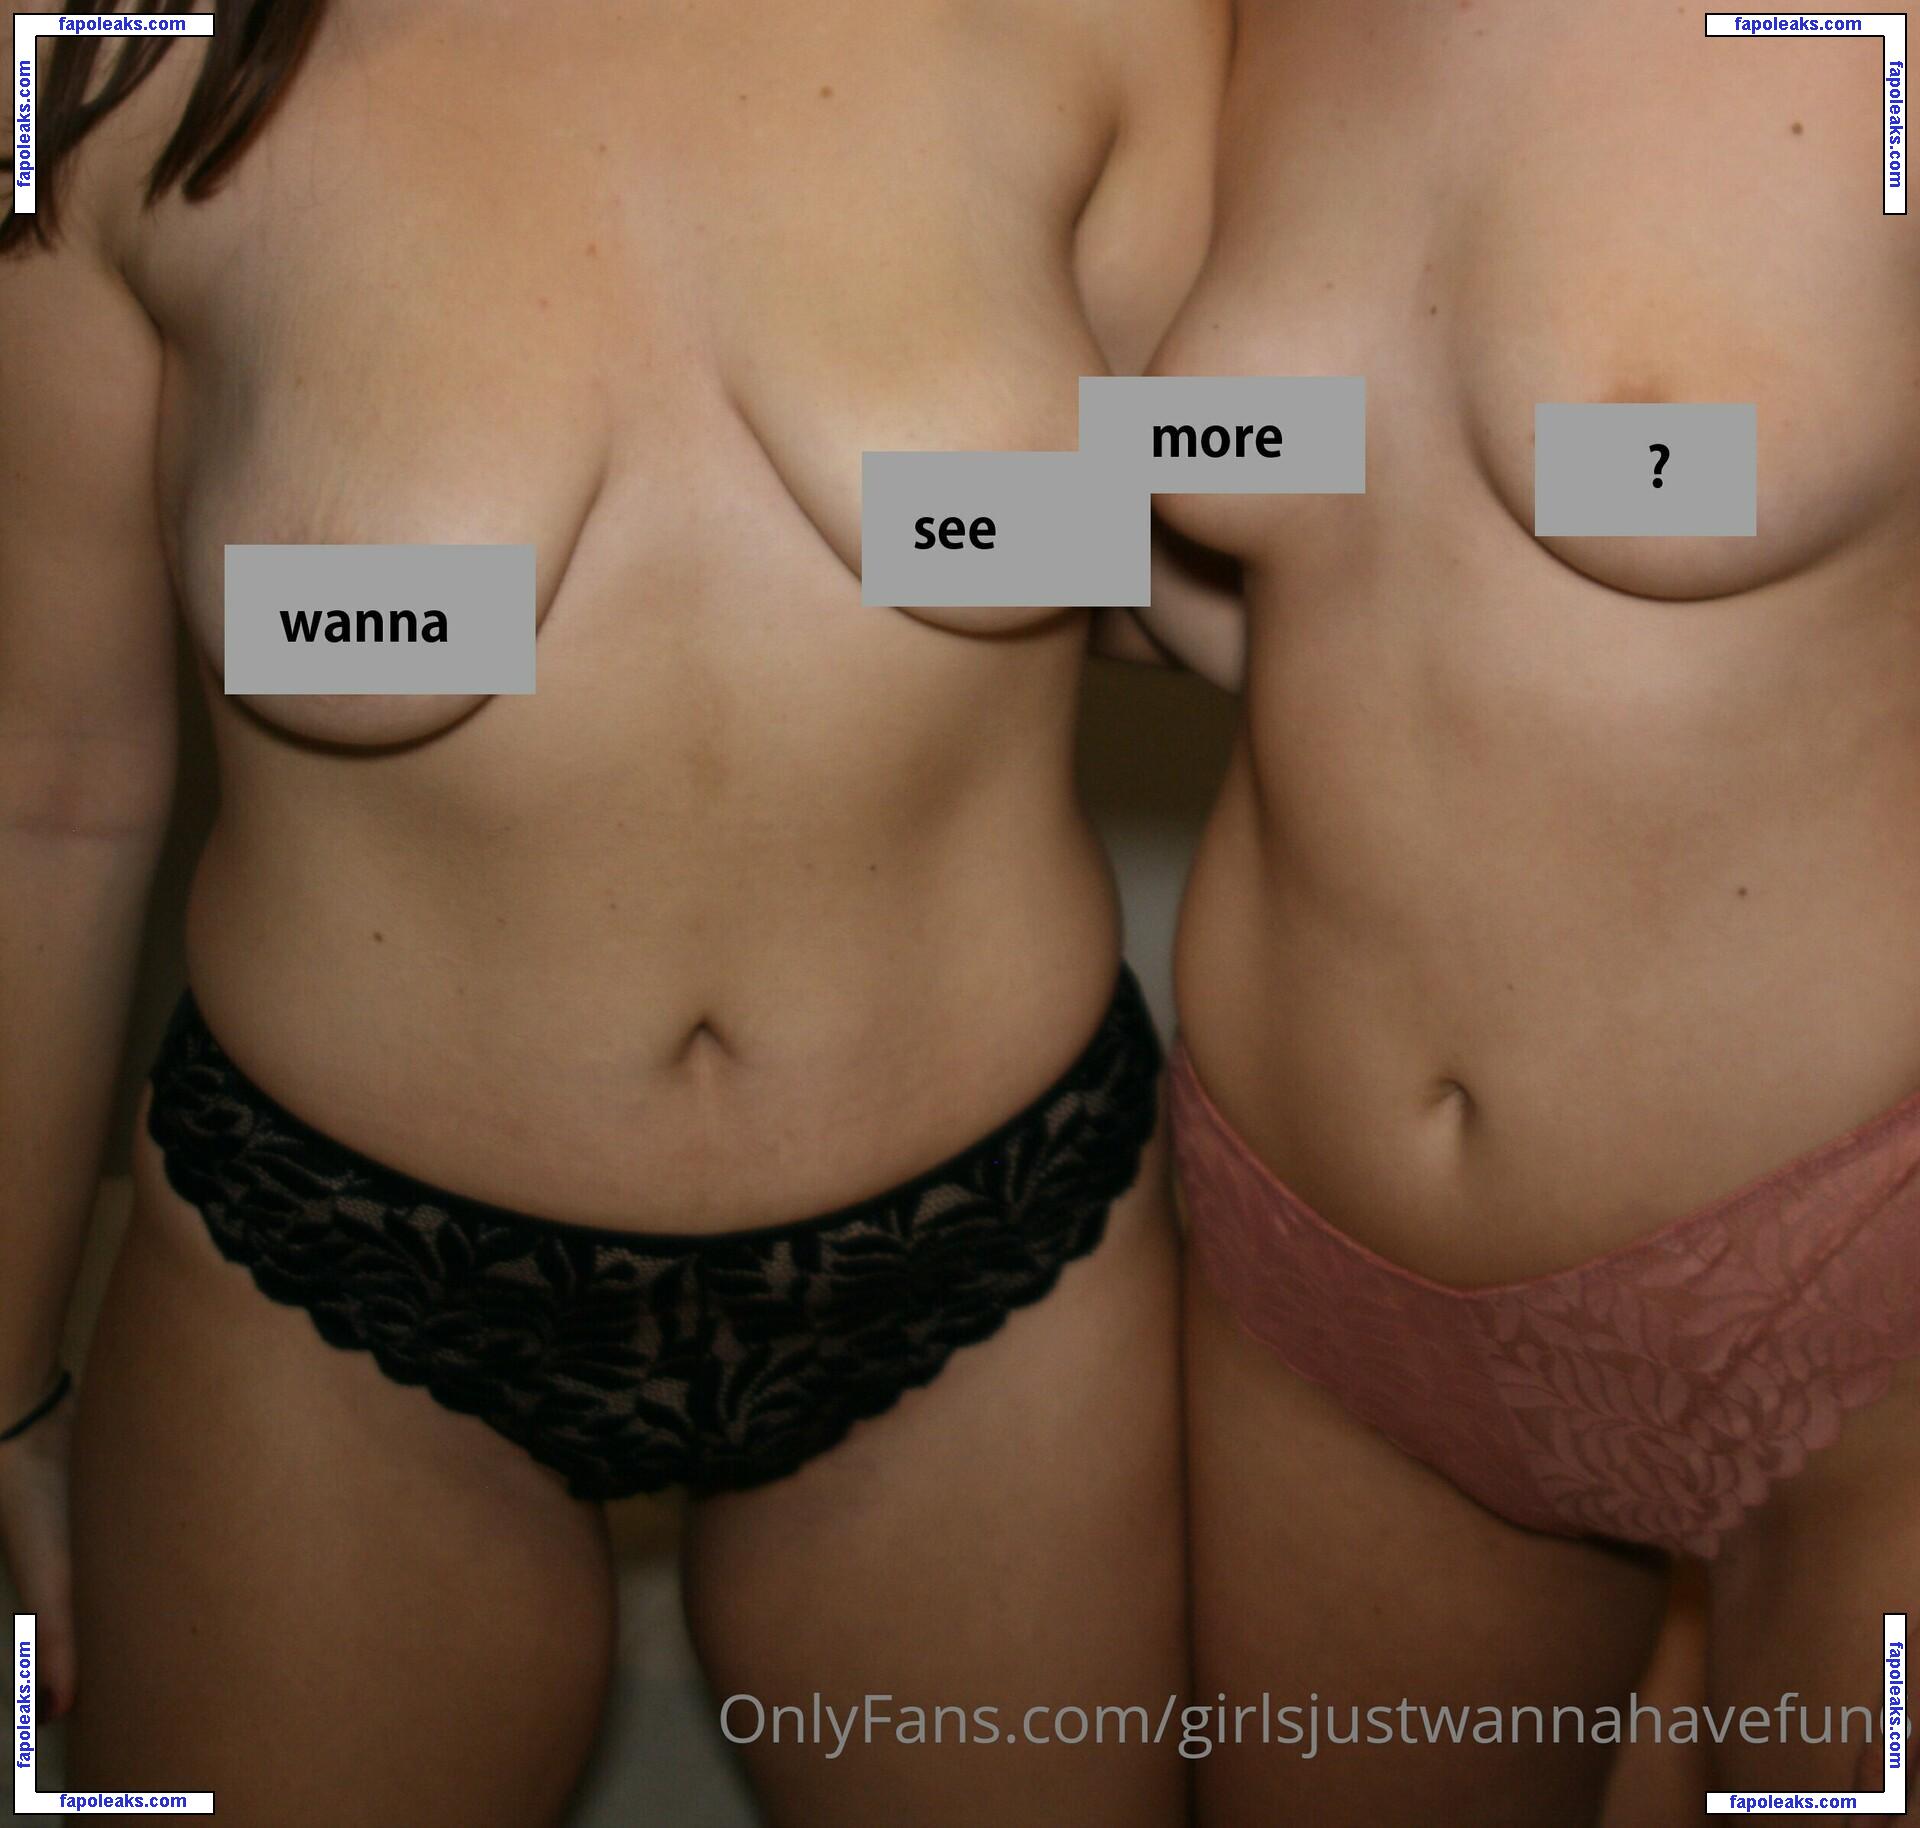 girlsjustwannahavefun6 / stellatietz nude photo #0004 from OnlyFans